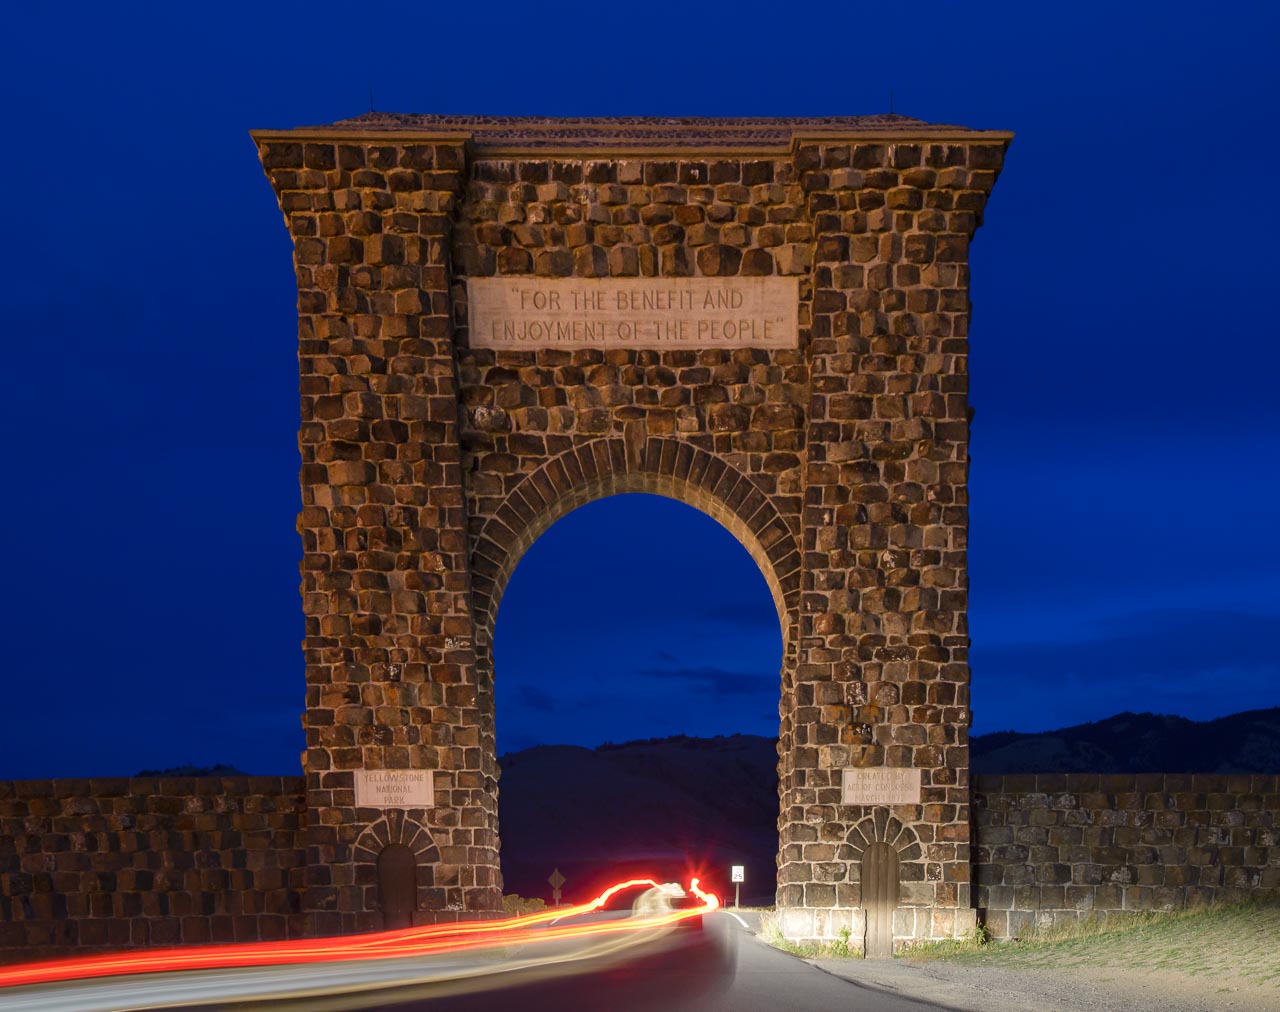 Wer den Yellowstone National Park aus Richtung Norden ansteuert, passiert dieses mächtige Tor bei der Stadt Gardiner im Bundesstaat Montana. Das Bauwerk wurde 1903 errichtet und nach dem damaligen US-Präsidenten Theodore Roosevelt als Roosevelt Arch bezeichnet.